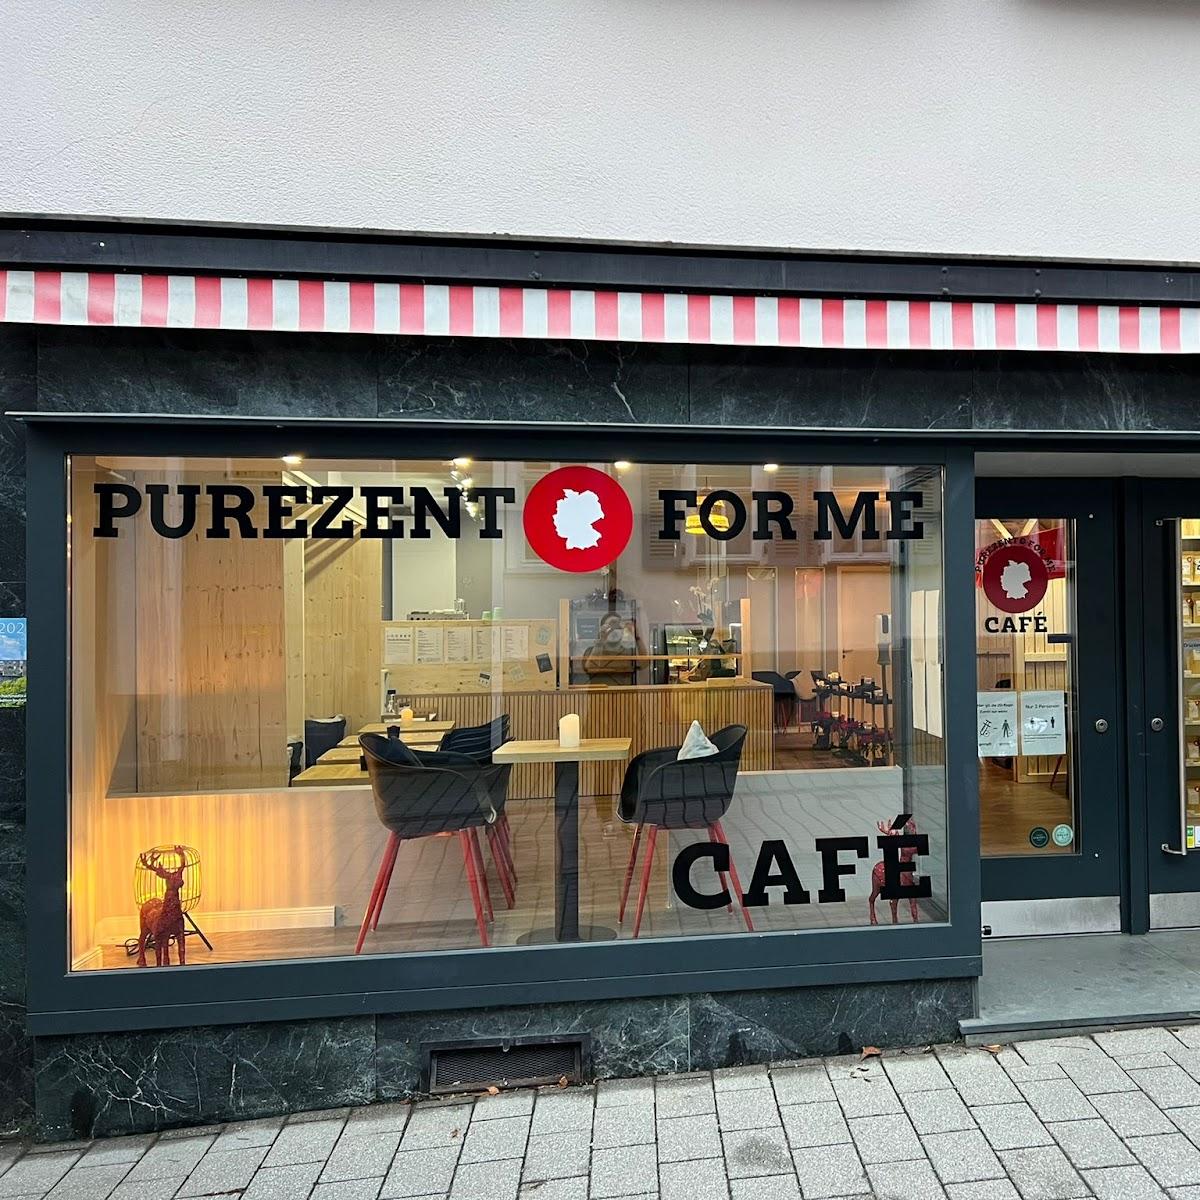 Restaurant "Purezento for me Café" in Königstein im Taunus